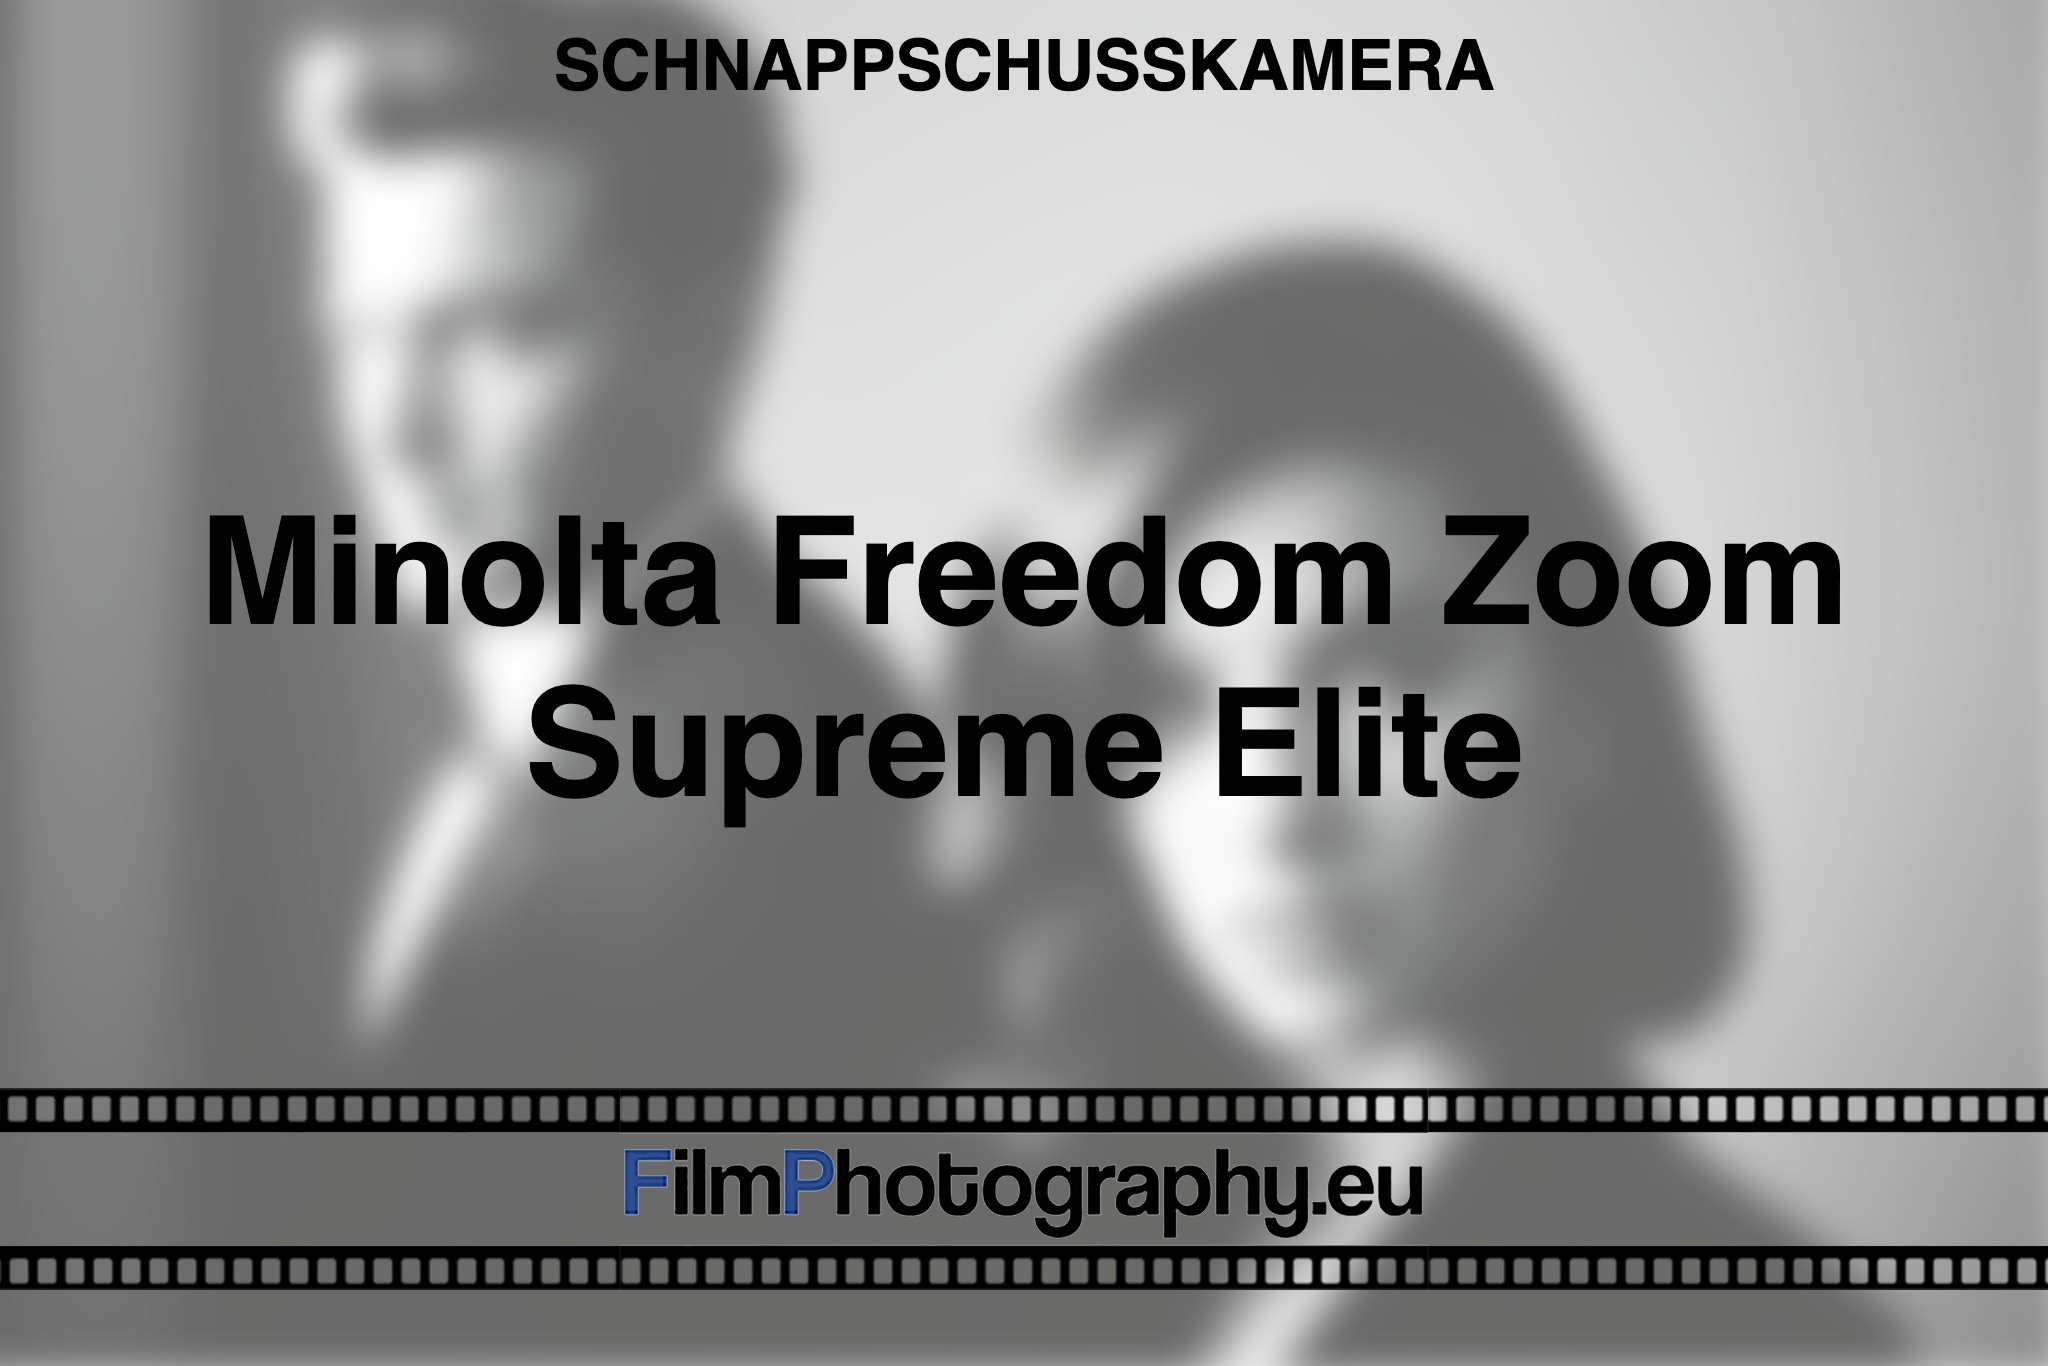 minolta-freedom-zoom-supreme-elite-schnappschusskamera-bnv